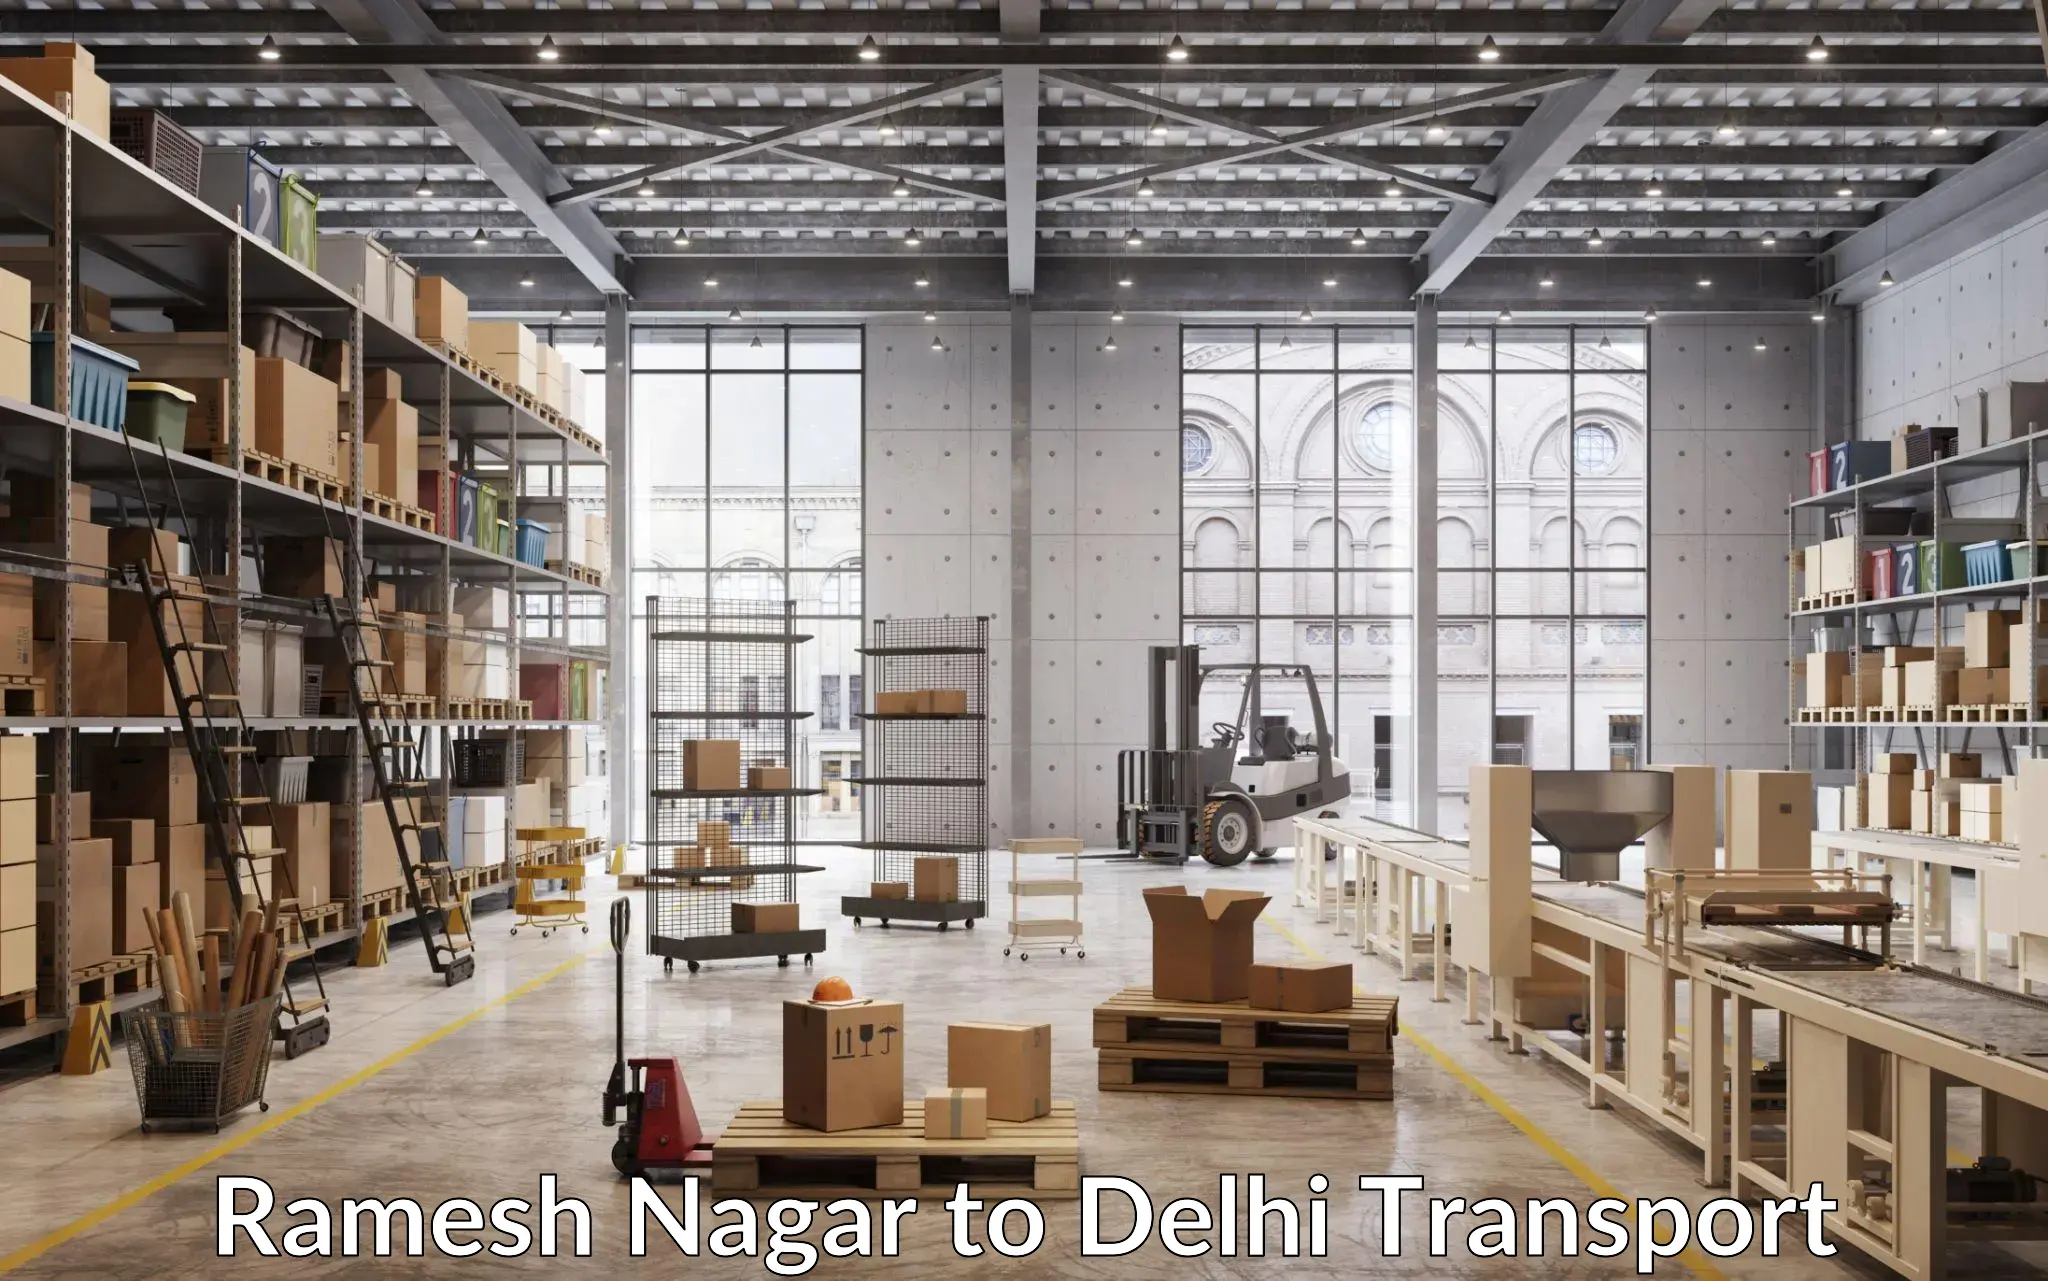 International cargo transportation services Ramesh Nagar to Delhi